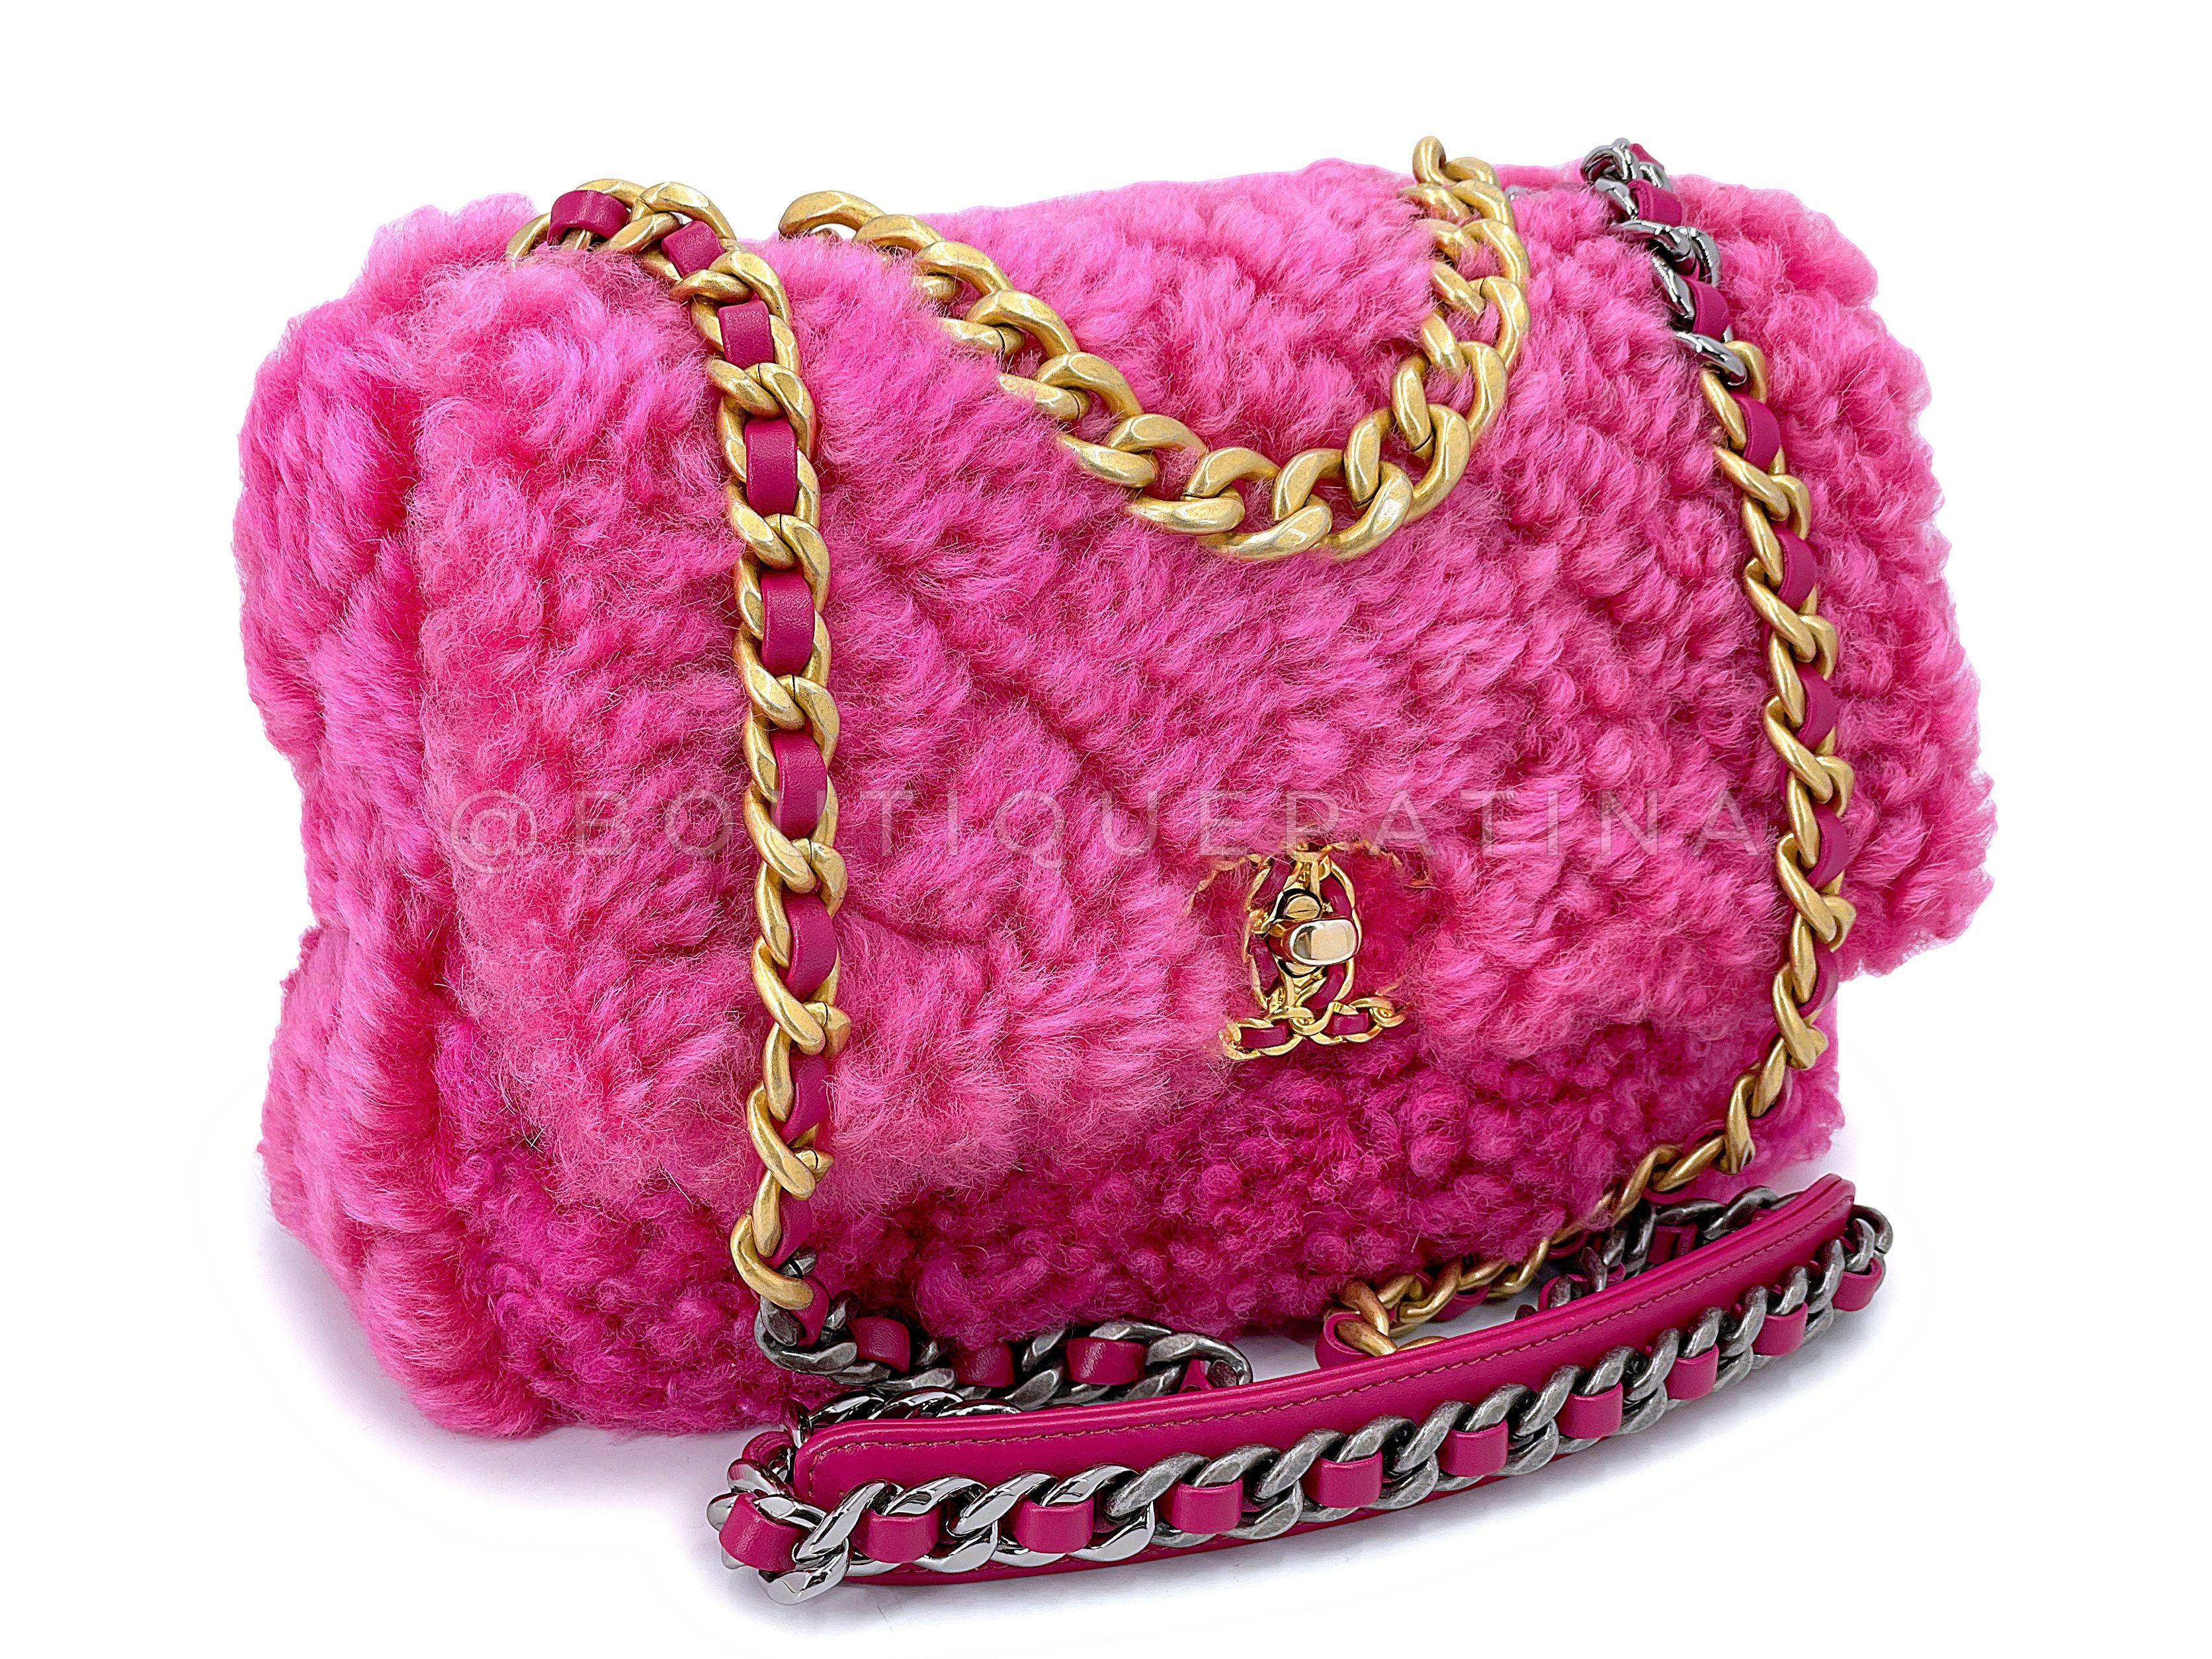 Artikel speichern: 67786
Diese Chanel 19 Pink Shearling Fur Small Medium Flap Bag ist super skurril und lecker mit einem fuchsia rosa Shearling Pelz, der gemütlich und schick zugleich ist. 

Die Chanel 19 ligne ist ein relativ neuer, zeitloser Look